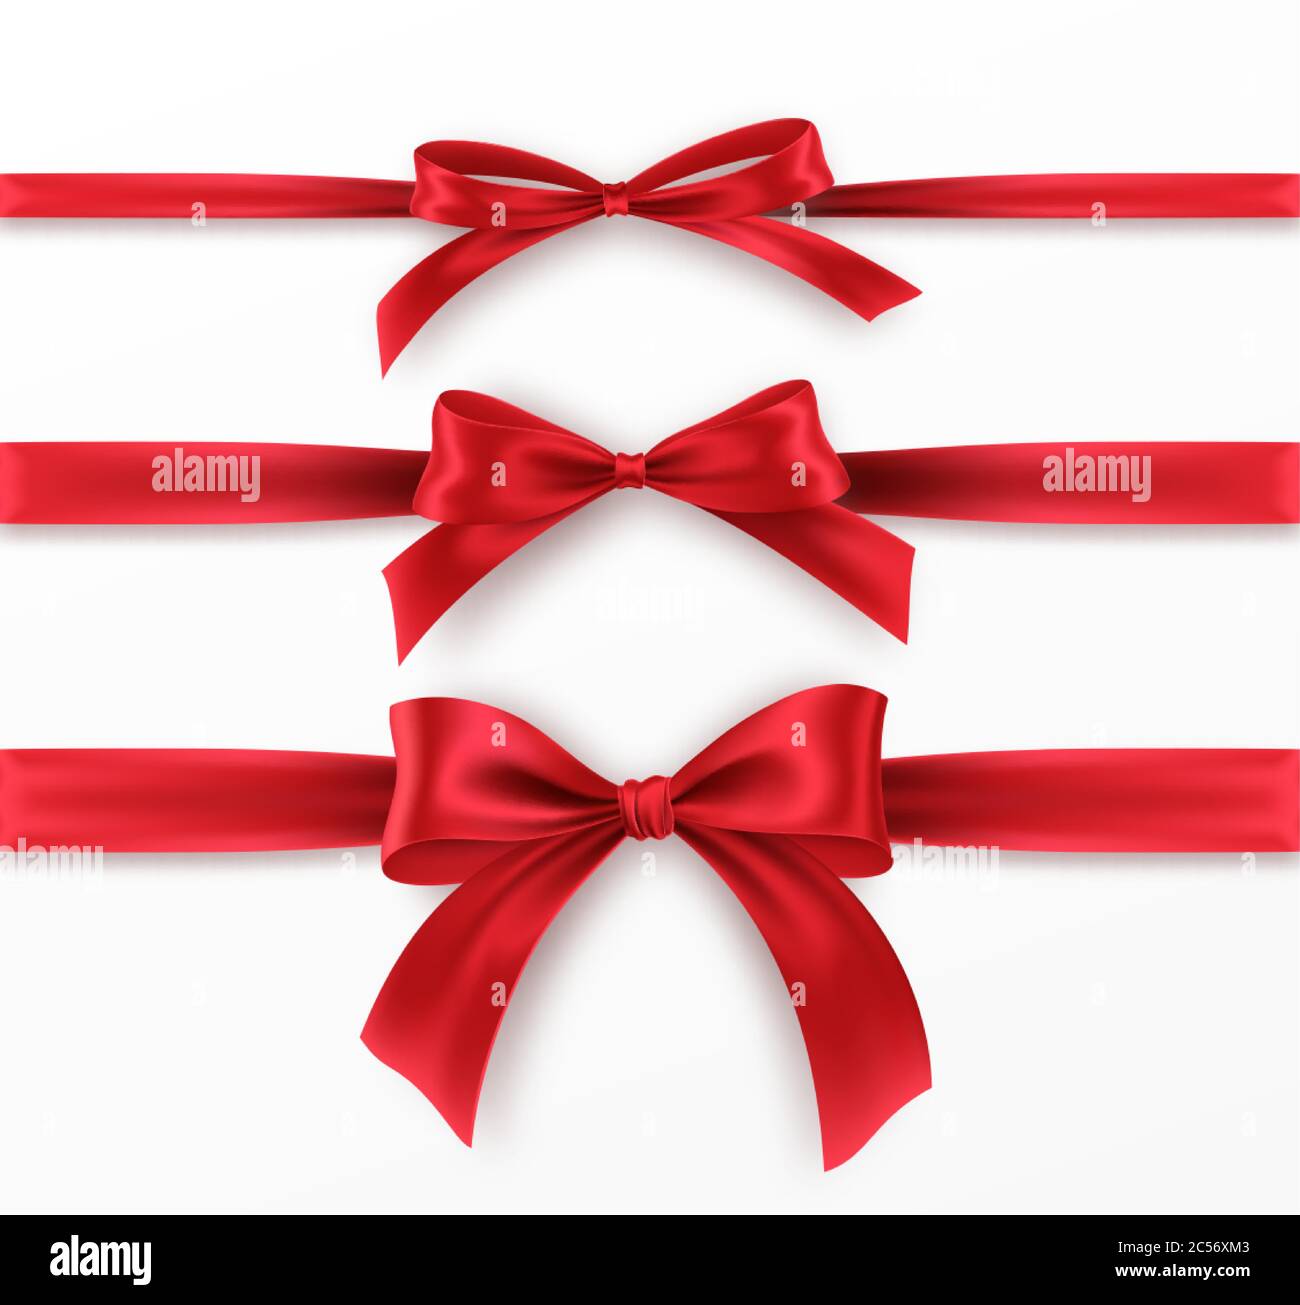 Impostare Red Bow e Ribbon su sfondo bianco. Archetto rosso realistico per il design della decorazione cornice per le vacanze, bordo. Illustrazione vettoriale Illustrazione Vettoriale